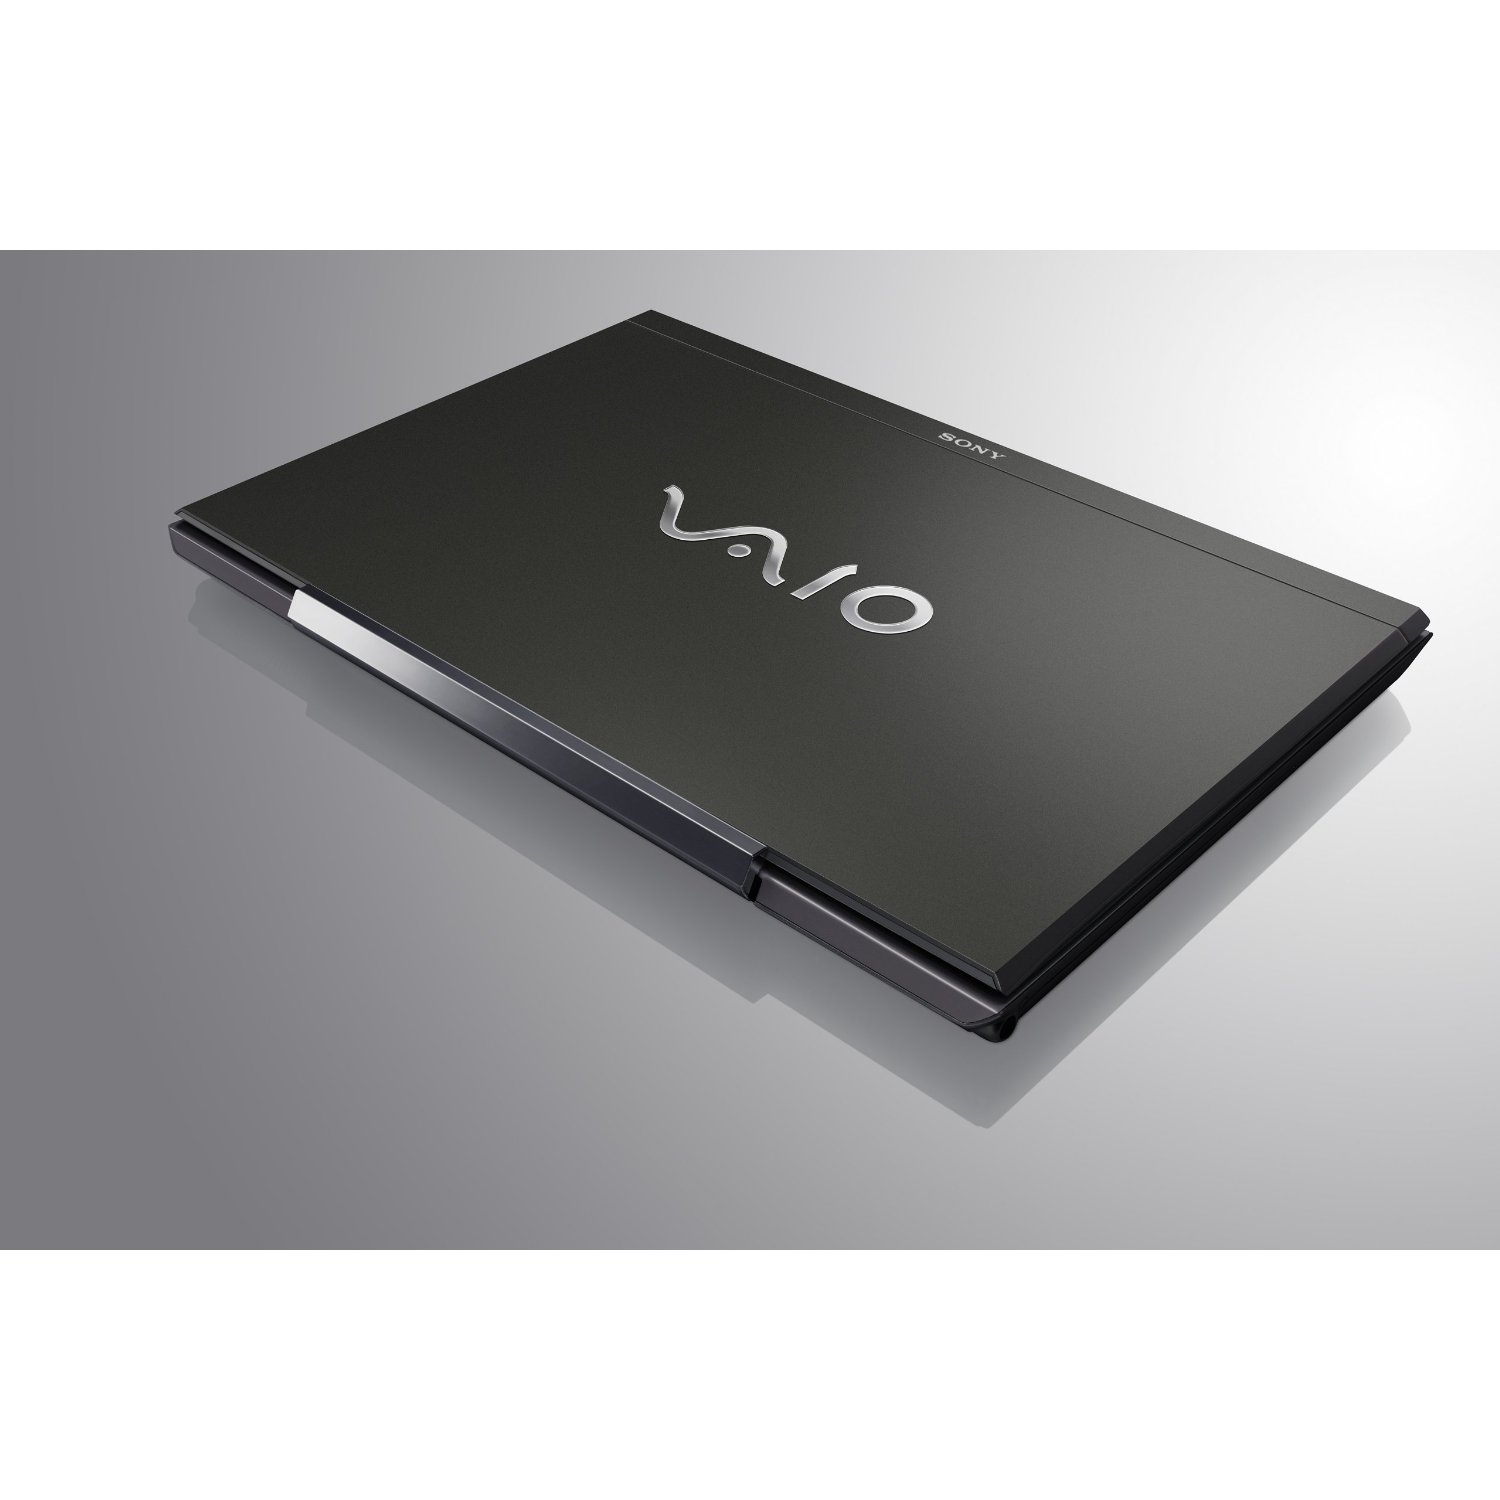 Sony Vaio VPC-SB1V9E/B - Notebookcheck.net External Reviews